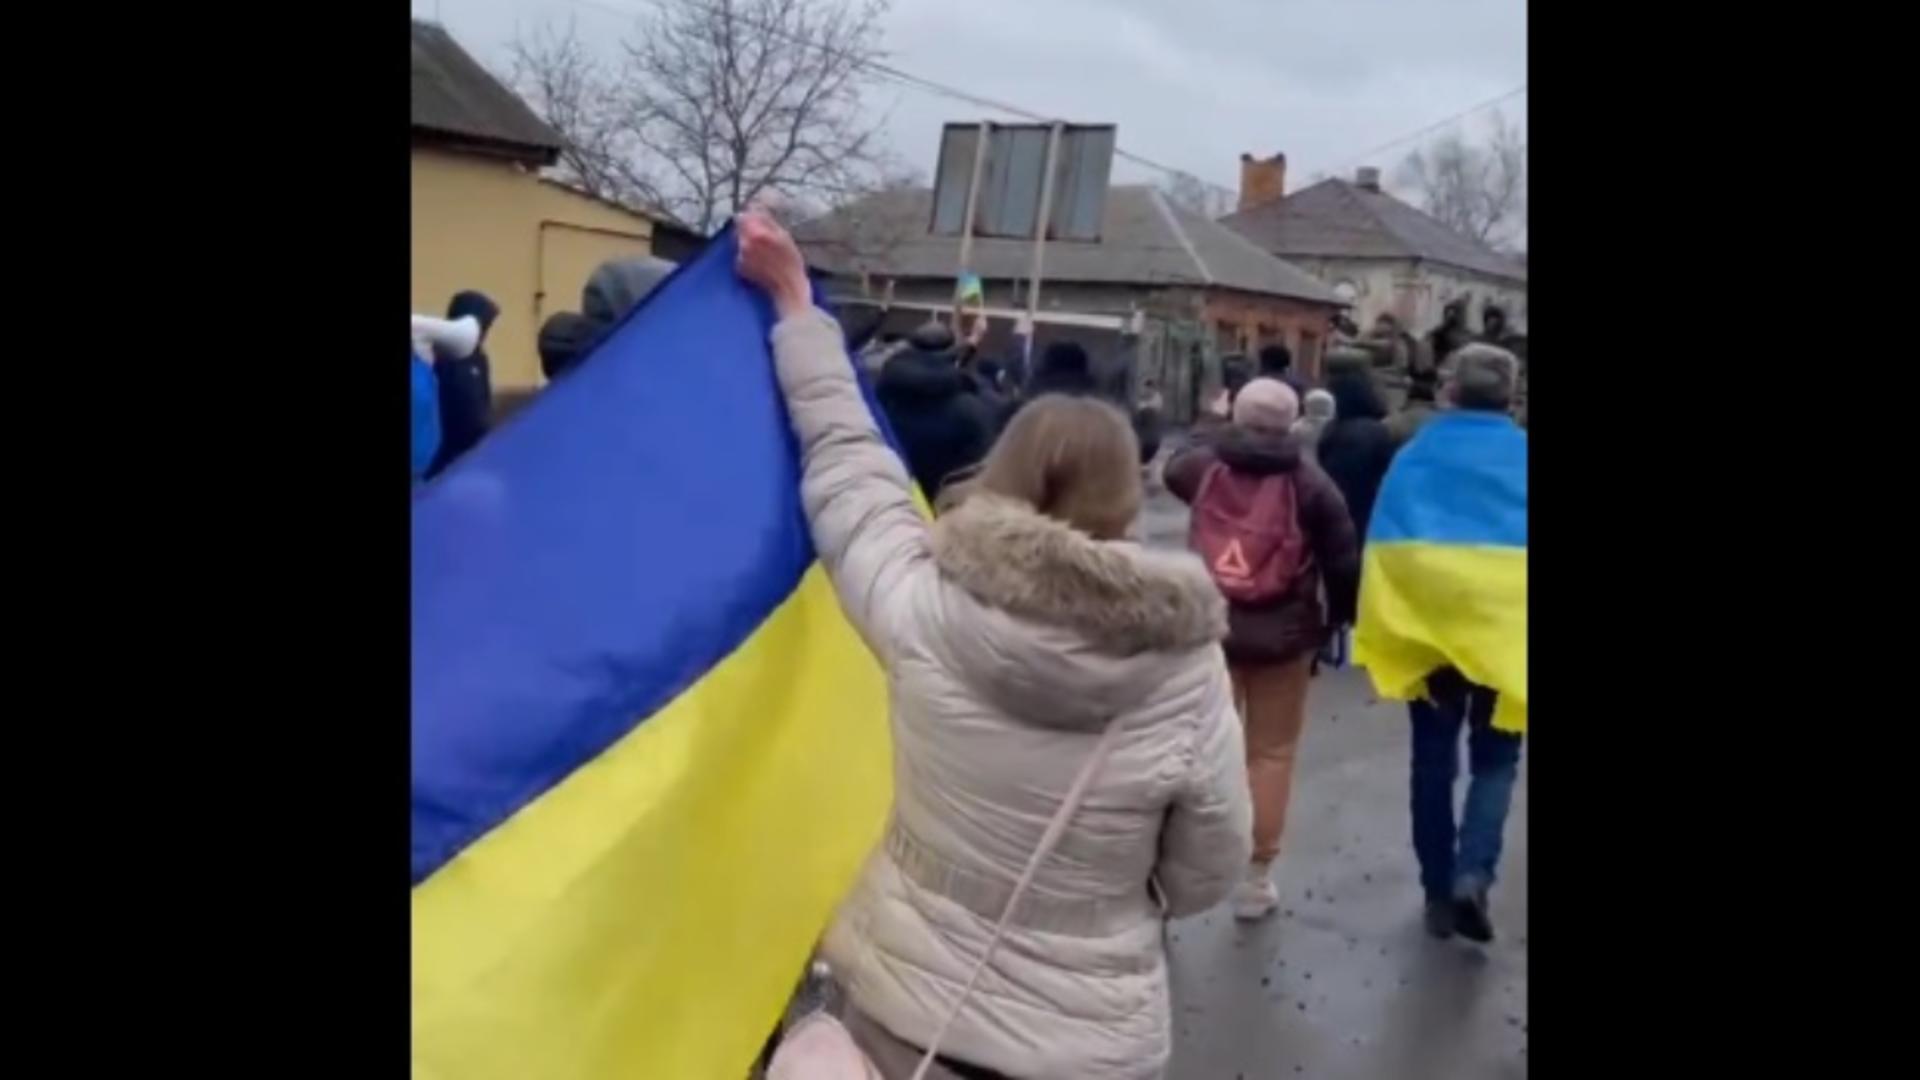 Civilii, scut uman în fața TANCURILOR rusești! Oamenii își apără țara cu mâinile goale - Imagini impresionante